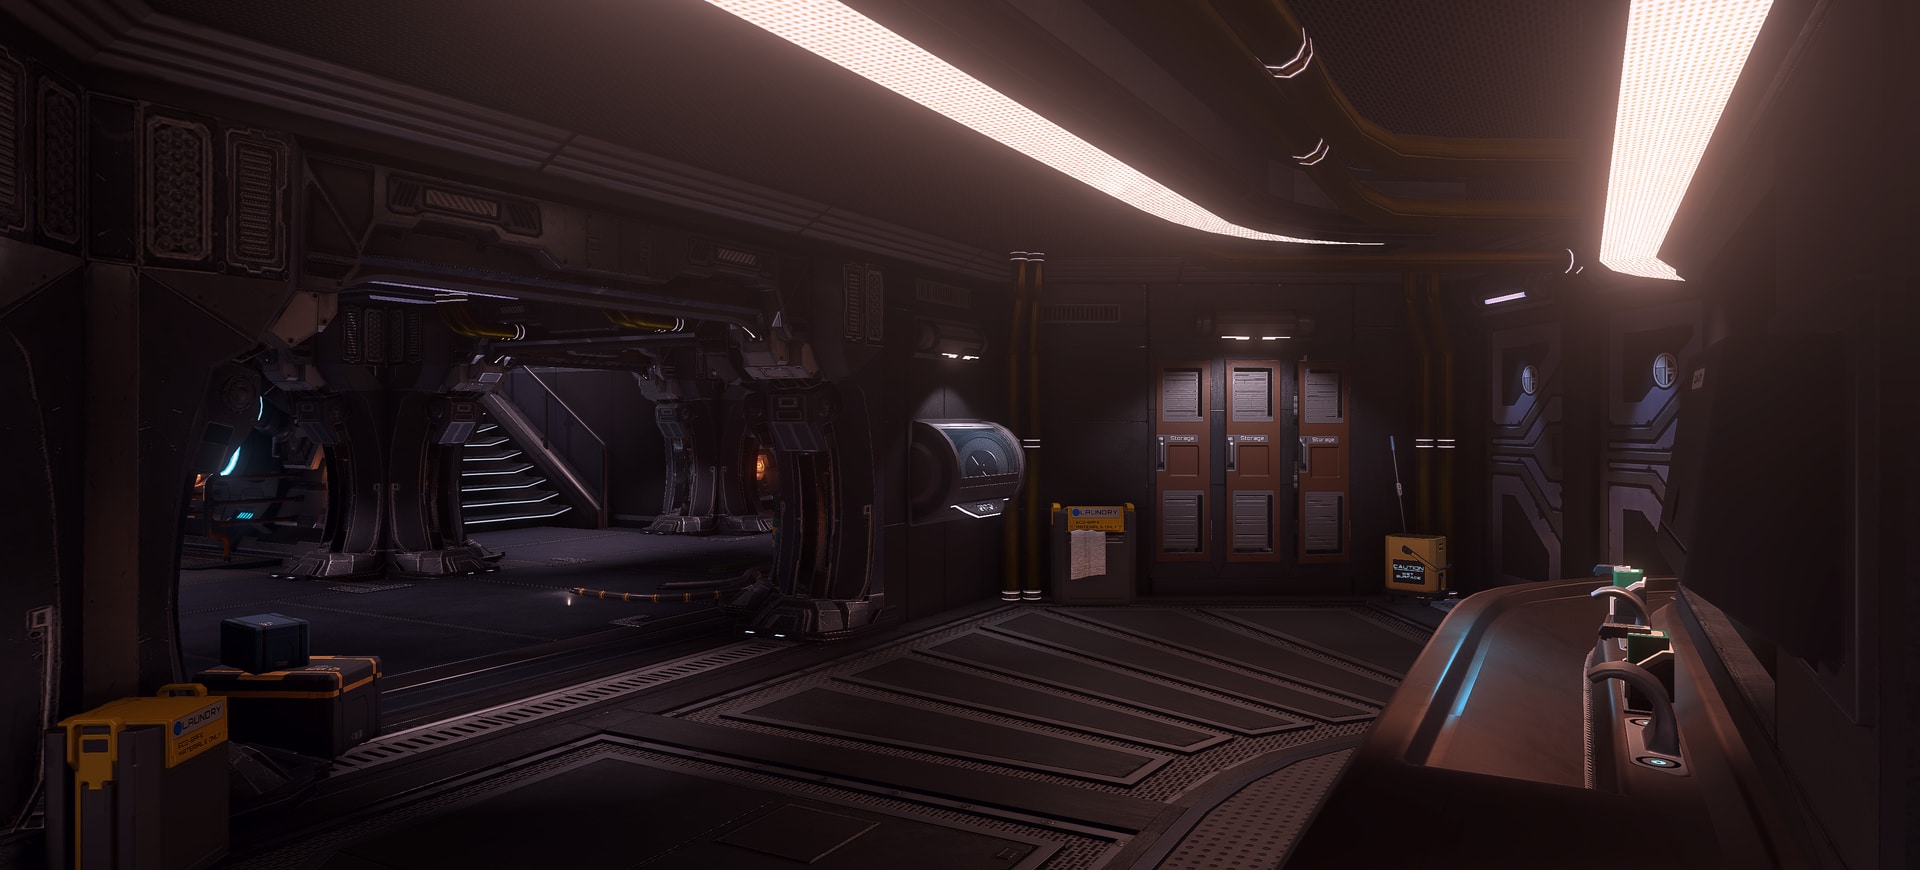 Game khoa học viễn tưởng The Station sắp có bản VR - Tin Game